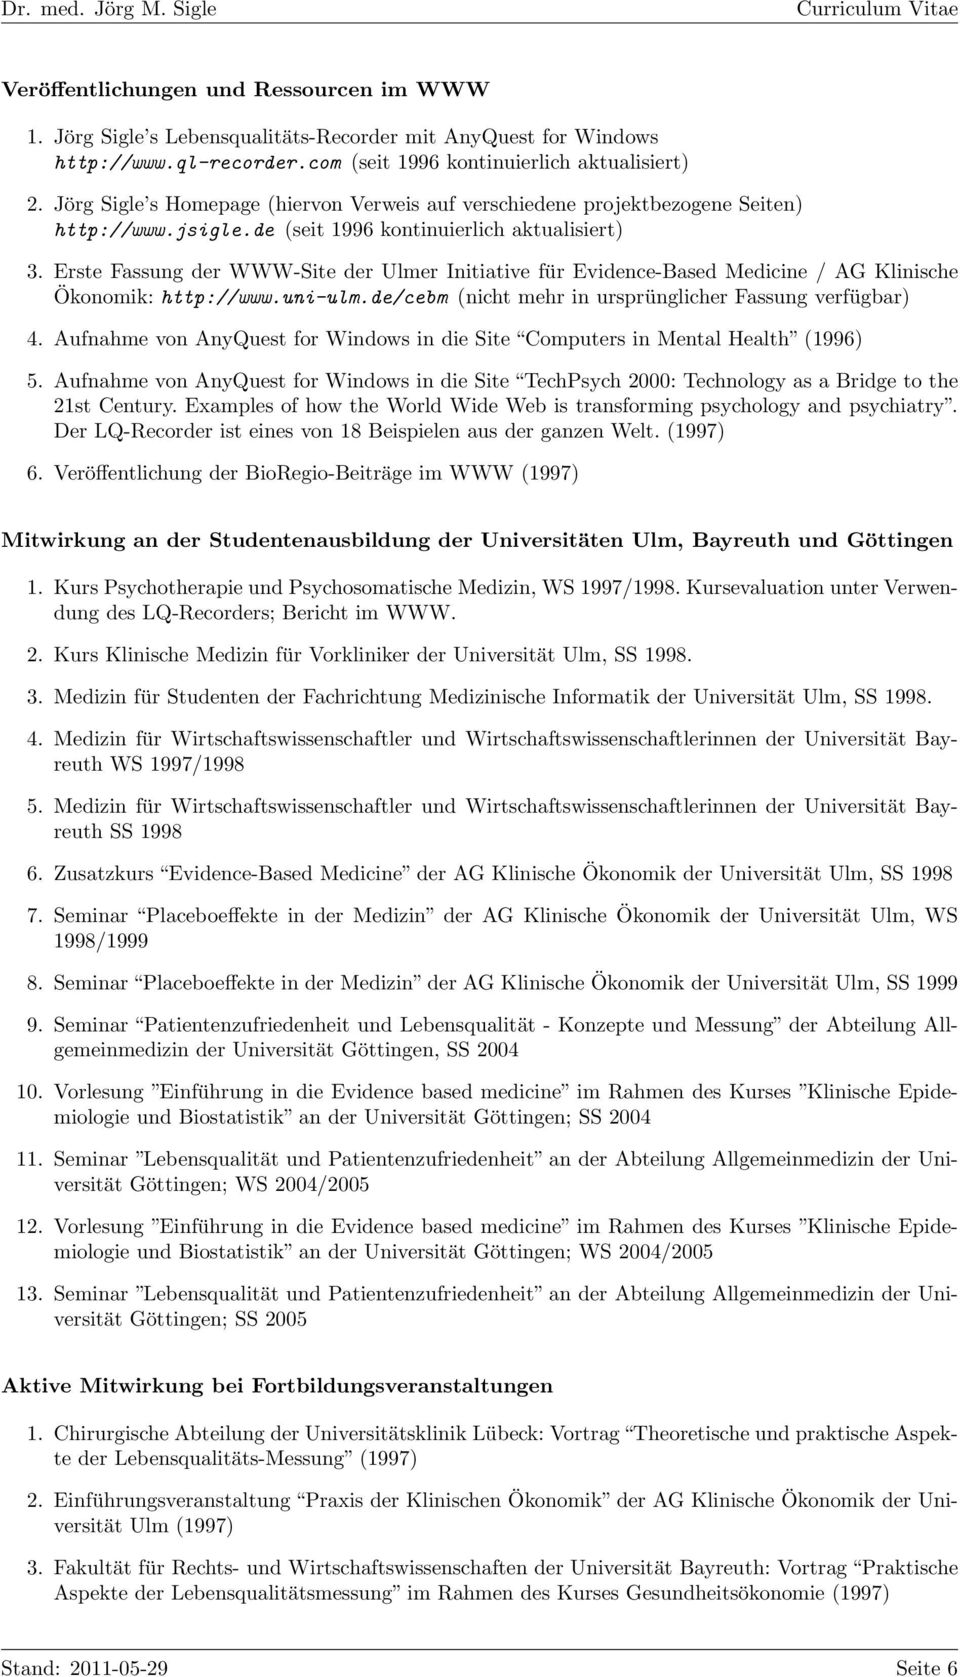 Erste Fassung der WWW-Site der Ulmer Initiative für Evidence-Based Medicine / AG Klinische Ökonomik: http://www.uni-ulm.de/cebm (nicht mehr in ursprünglicher Fassung verfügbar) 4.